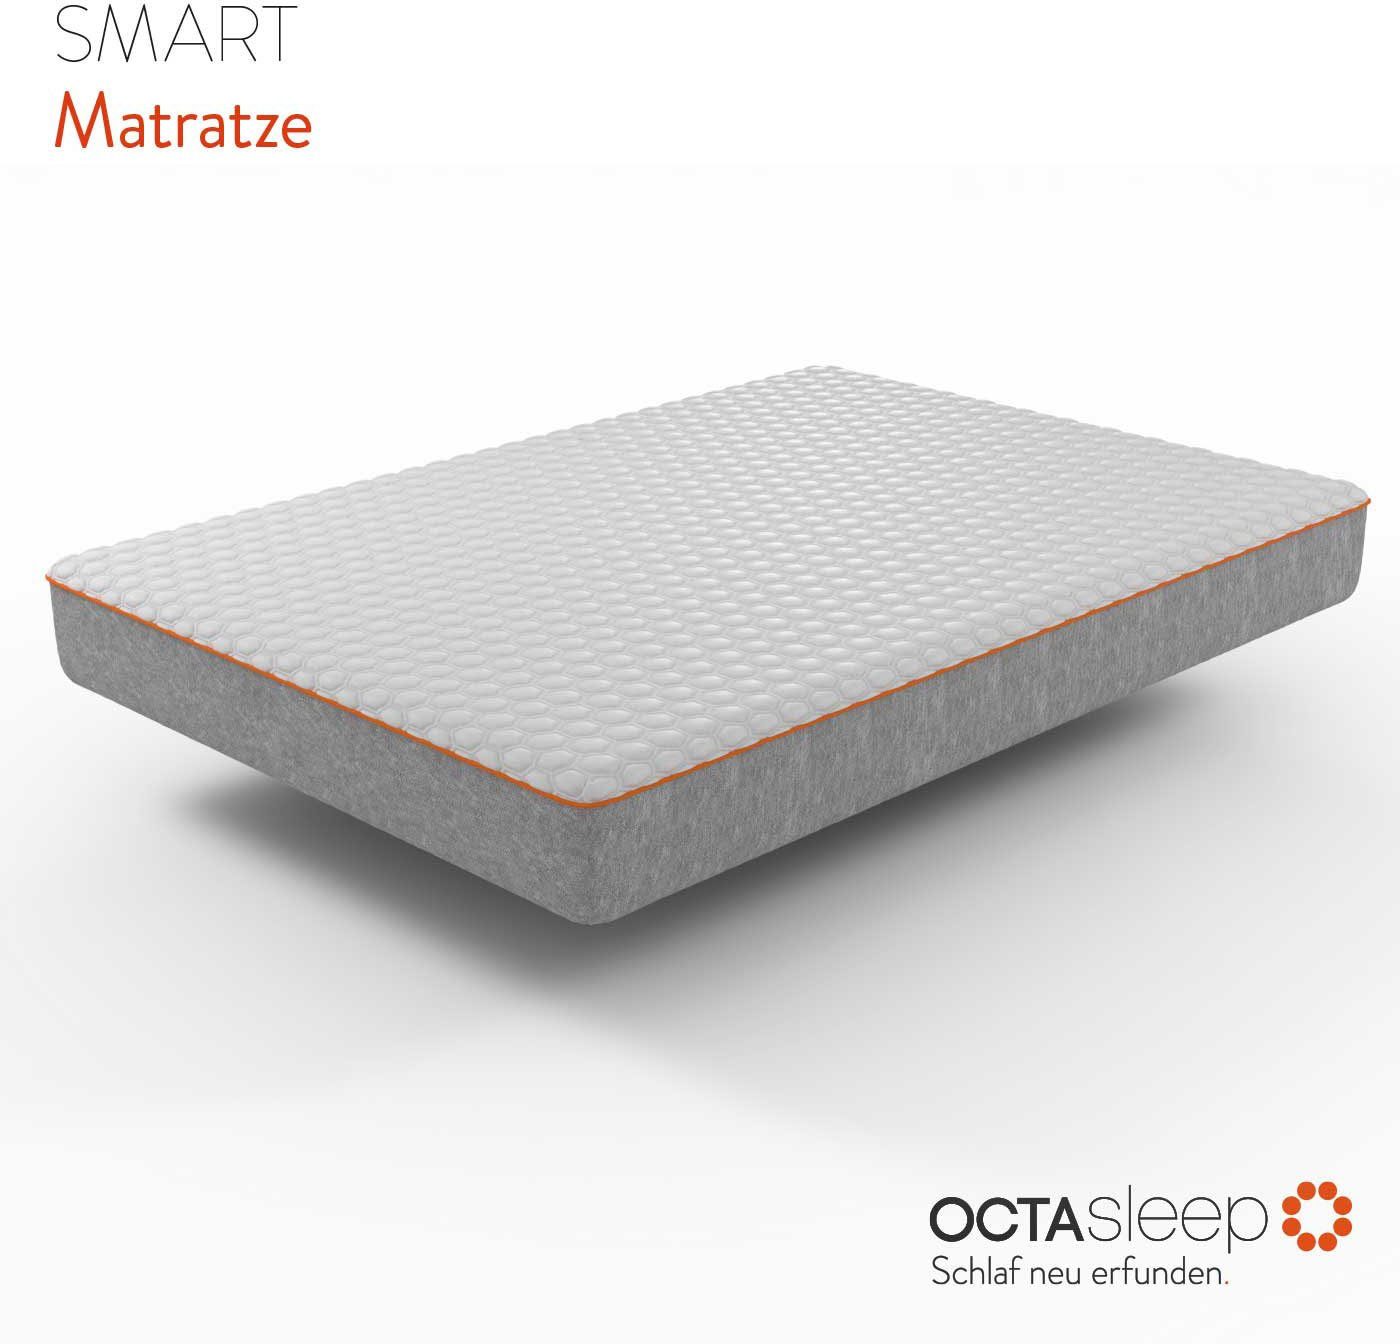 neuartigem cm Innovative Matress, mit Octasleep Schaumfedern OCTAsleep, Komfortschaummatratze Smart 18 Komforterlebnis hoch,